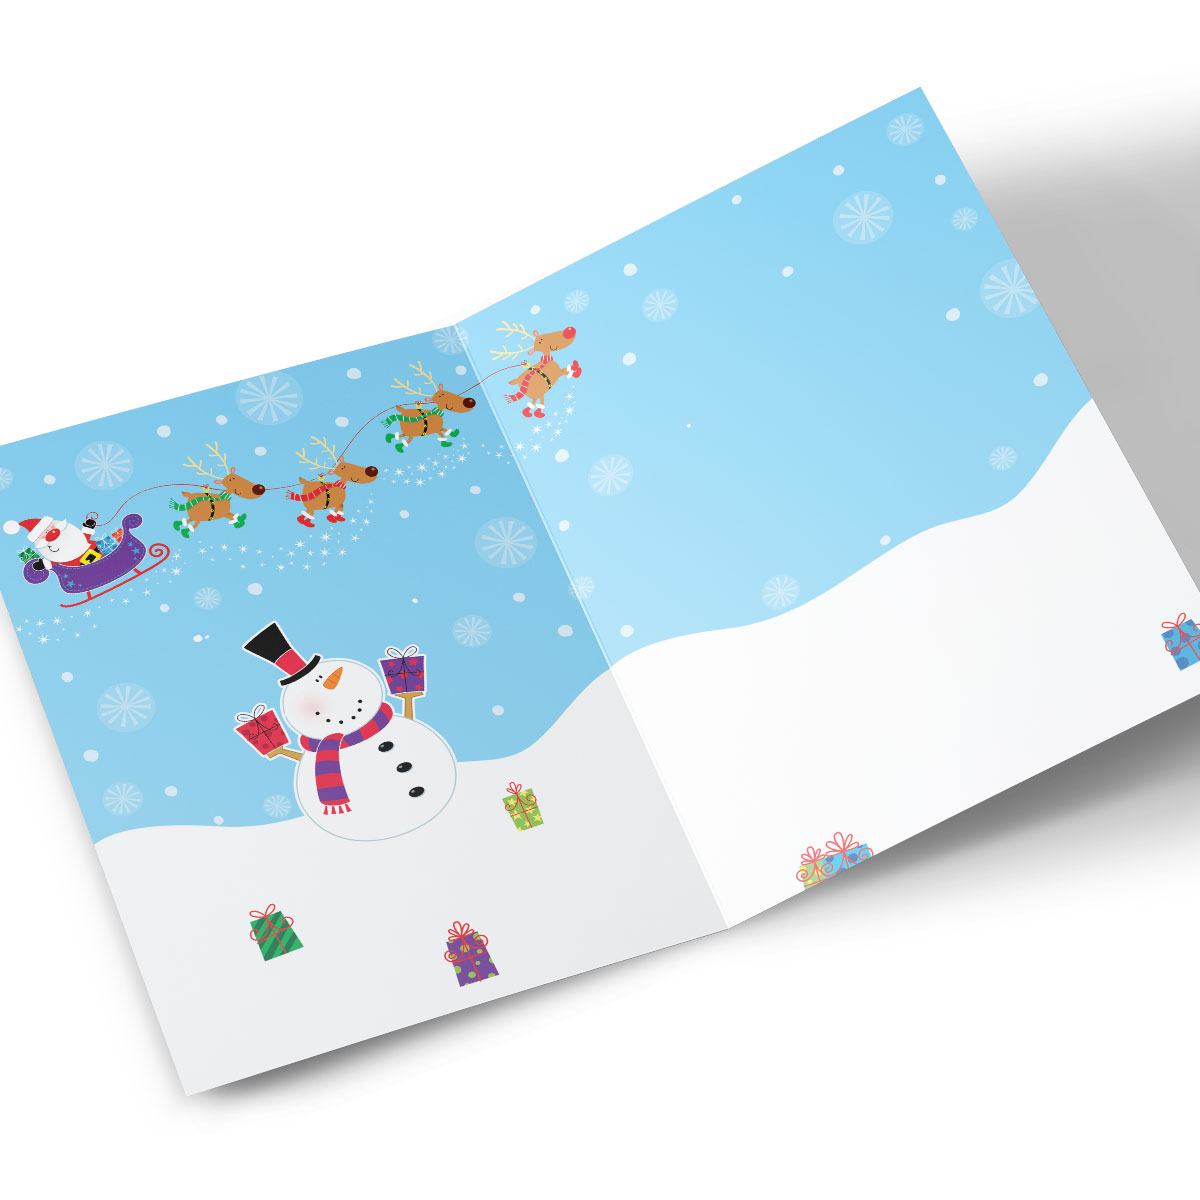 Personalised Christmas Card - Ho Ho Ho, Santa's Sleigh